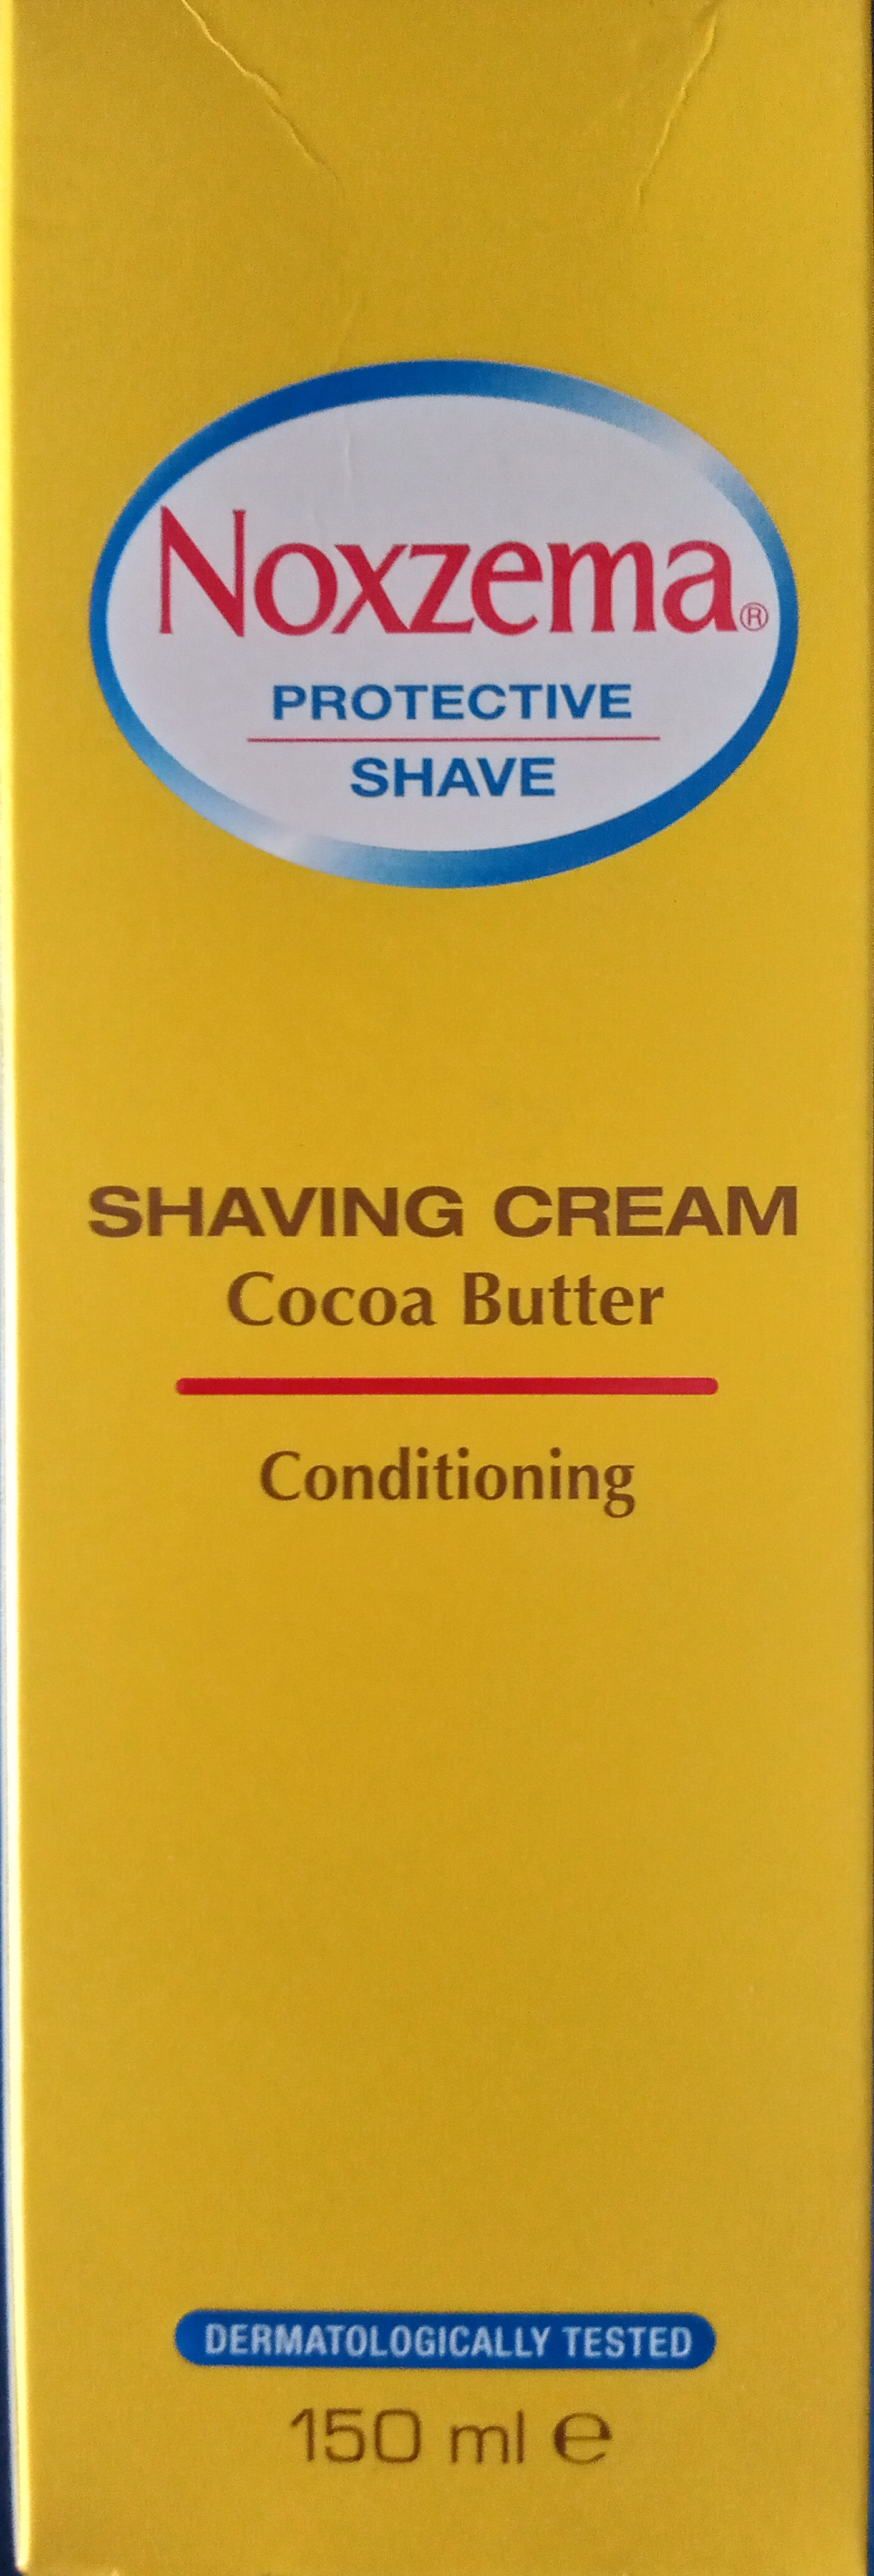 Noxzema Schiuma da barba (burro di cacao) Shaving Cream Cocoa butter - Produit - it